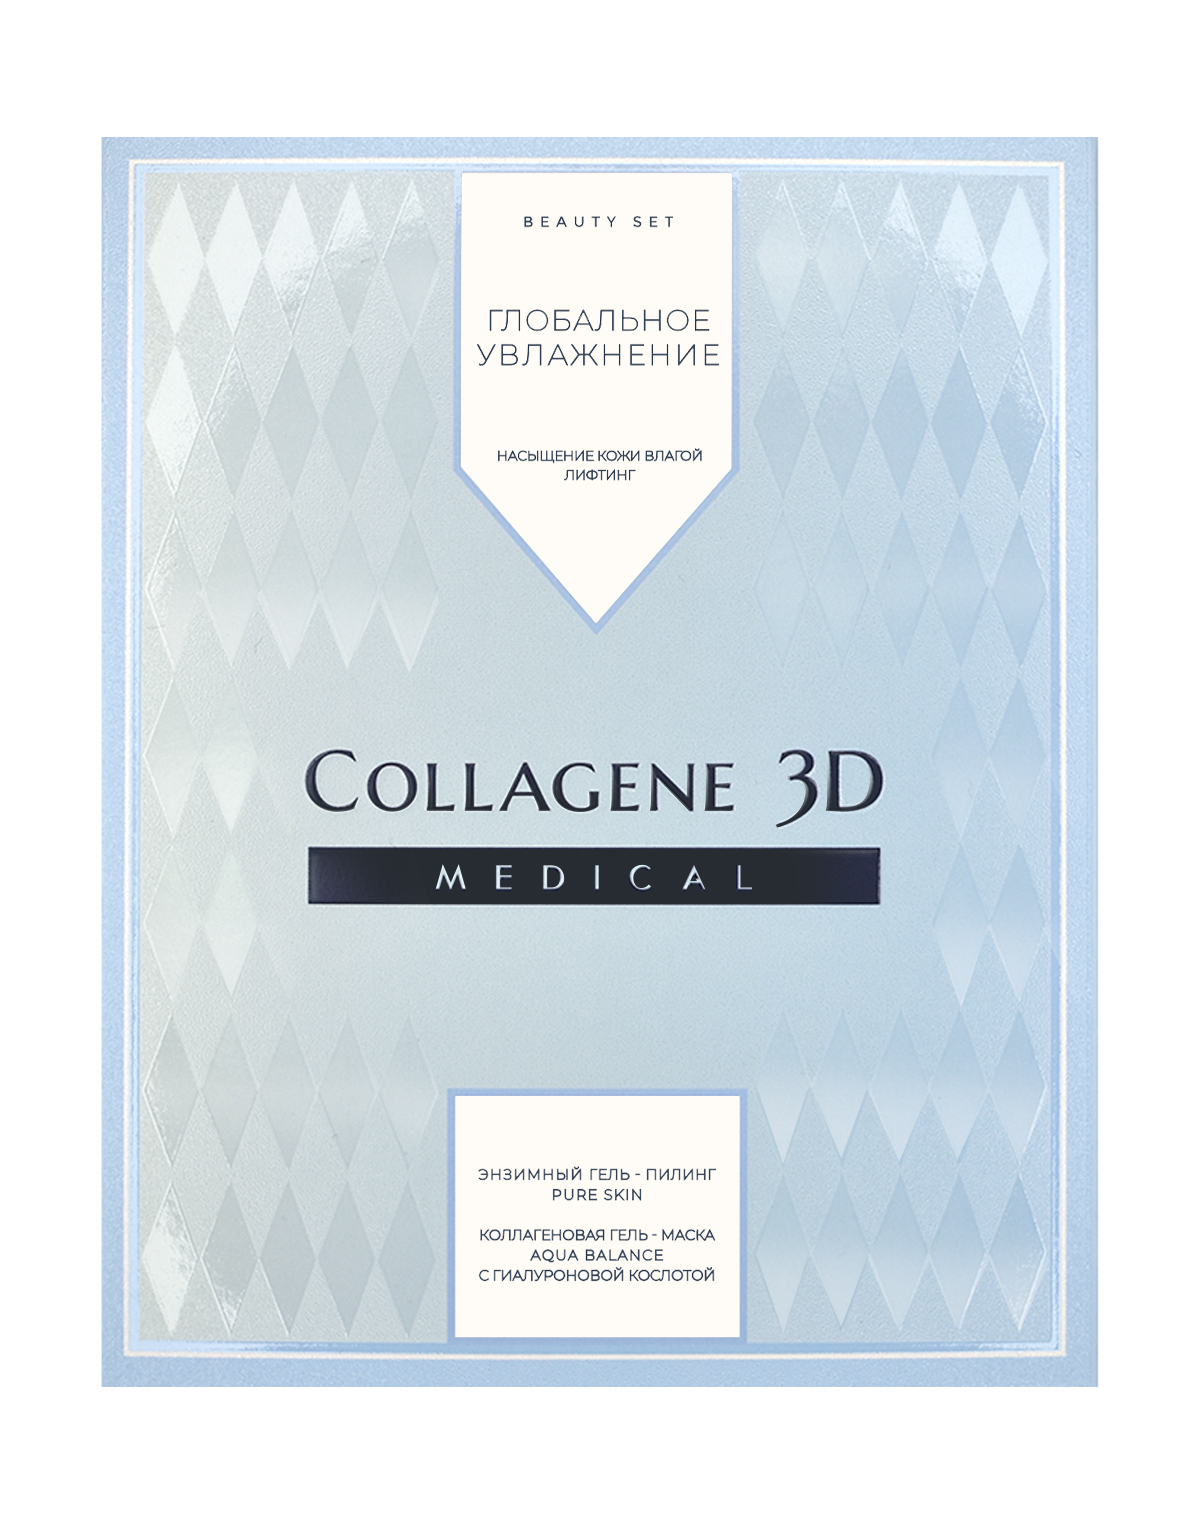 Коллаген 3Д Набор подарочный Глобальное увлажнение: Гель-маска Aqua Balance с гиалуроновой кислотой 30 мл + Энзимный гель-пилинг Pure skin 50 мл (Collagene 3D, Aqua Balance) фото 0